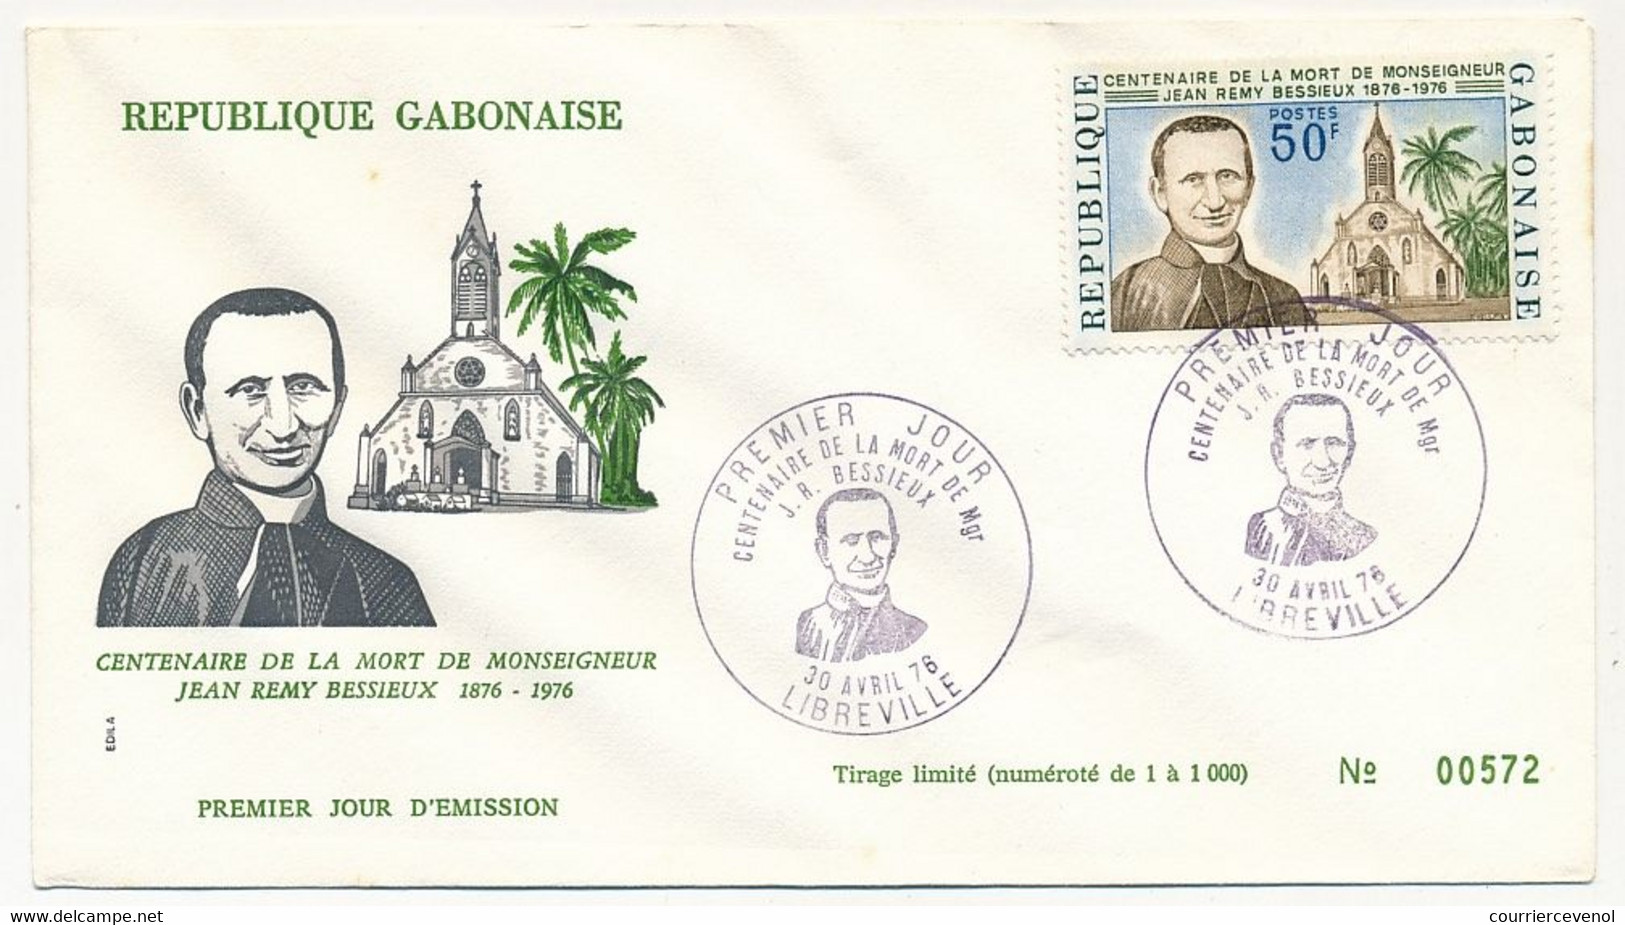 GABON => Env FDC => 50F Centenaire De La Mort De J.R. Bessieux - 30 Avril 1978 - Libreville - Gabon